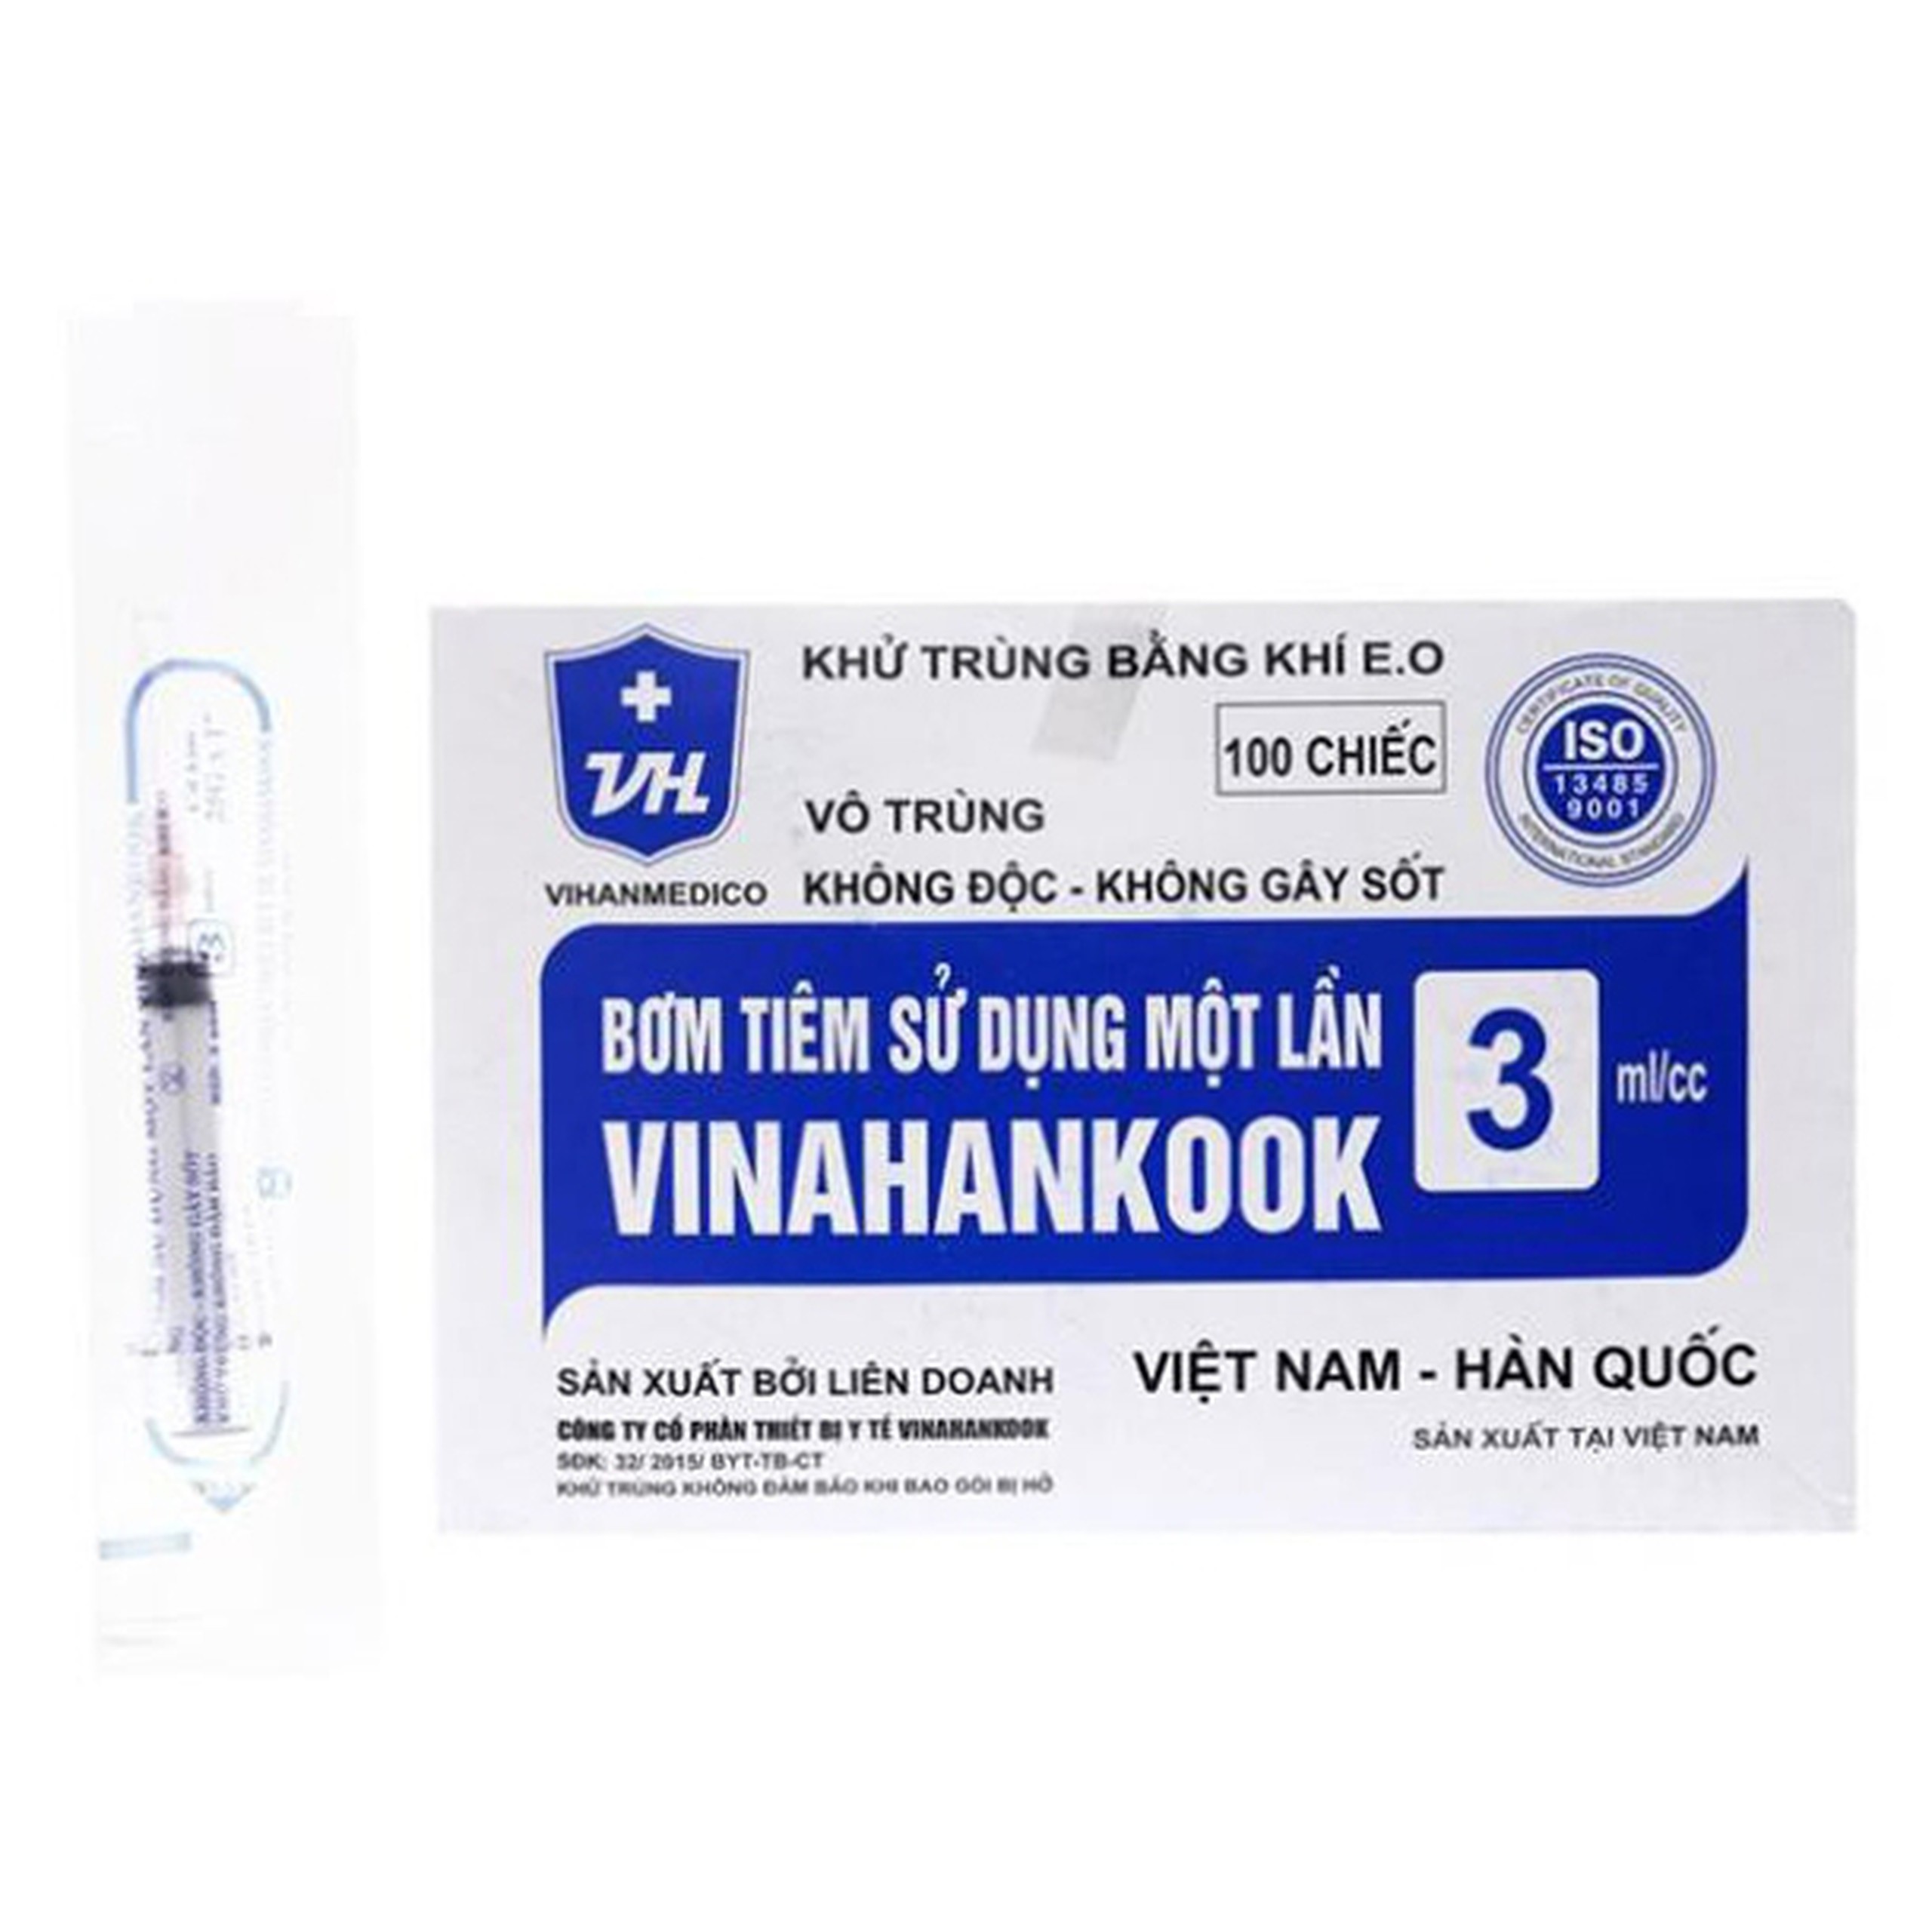 Bơm tiêm sử dụng một lần Vinahankook 3ml/cc được khử trùng bằng khí E.O (25g - 100 cái)